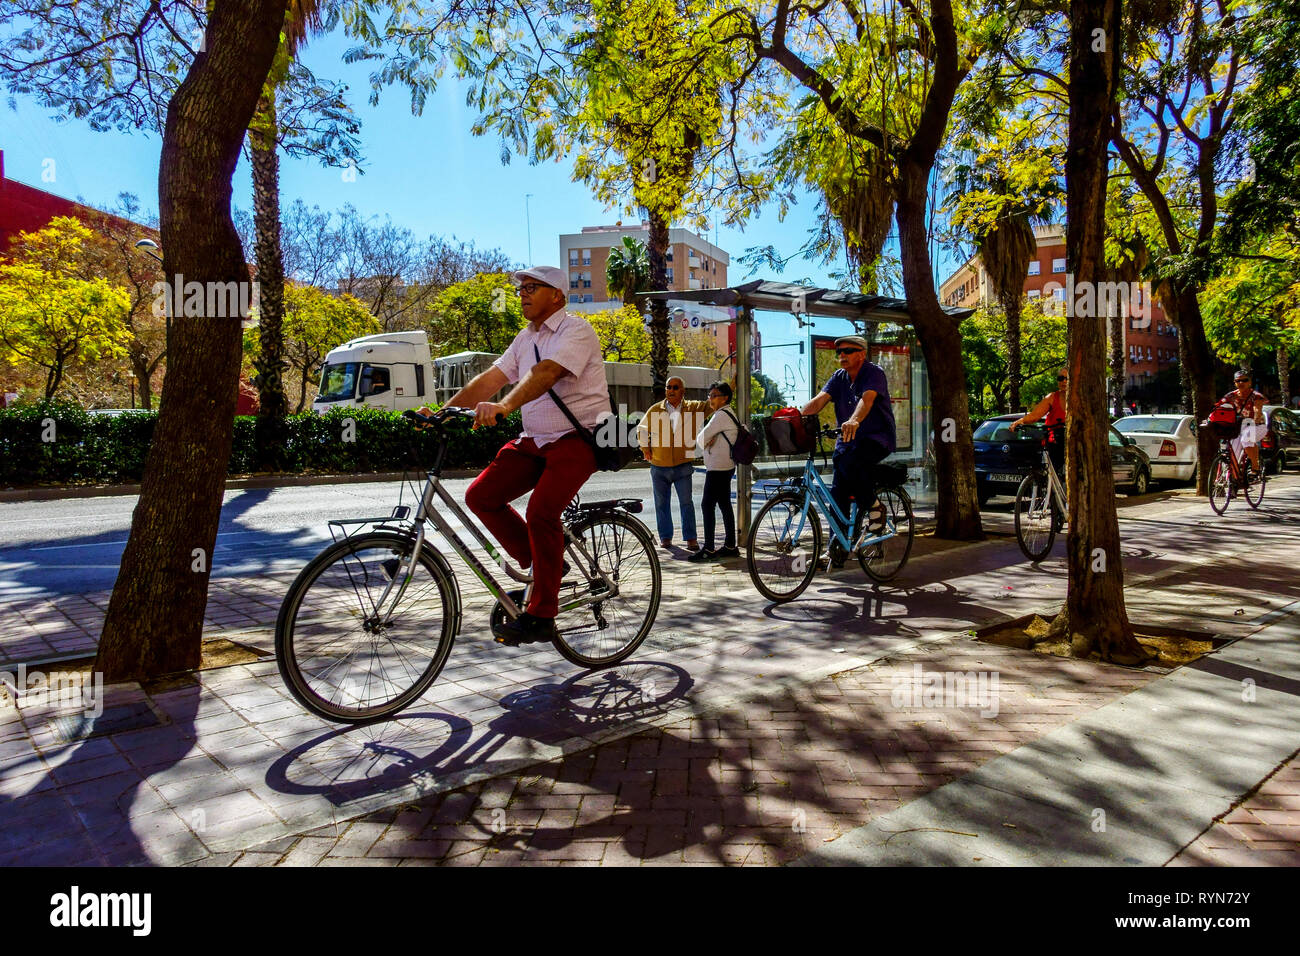 Valence personnes cyclisme, la rue sous les arbres, Valencia printemps Espagne ville vélo Valencia Espagne Europe Banque D'Images